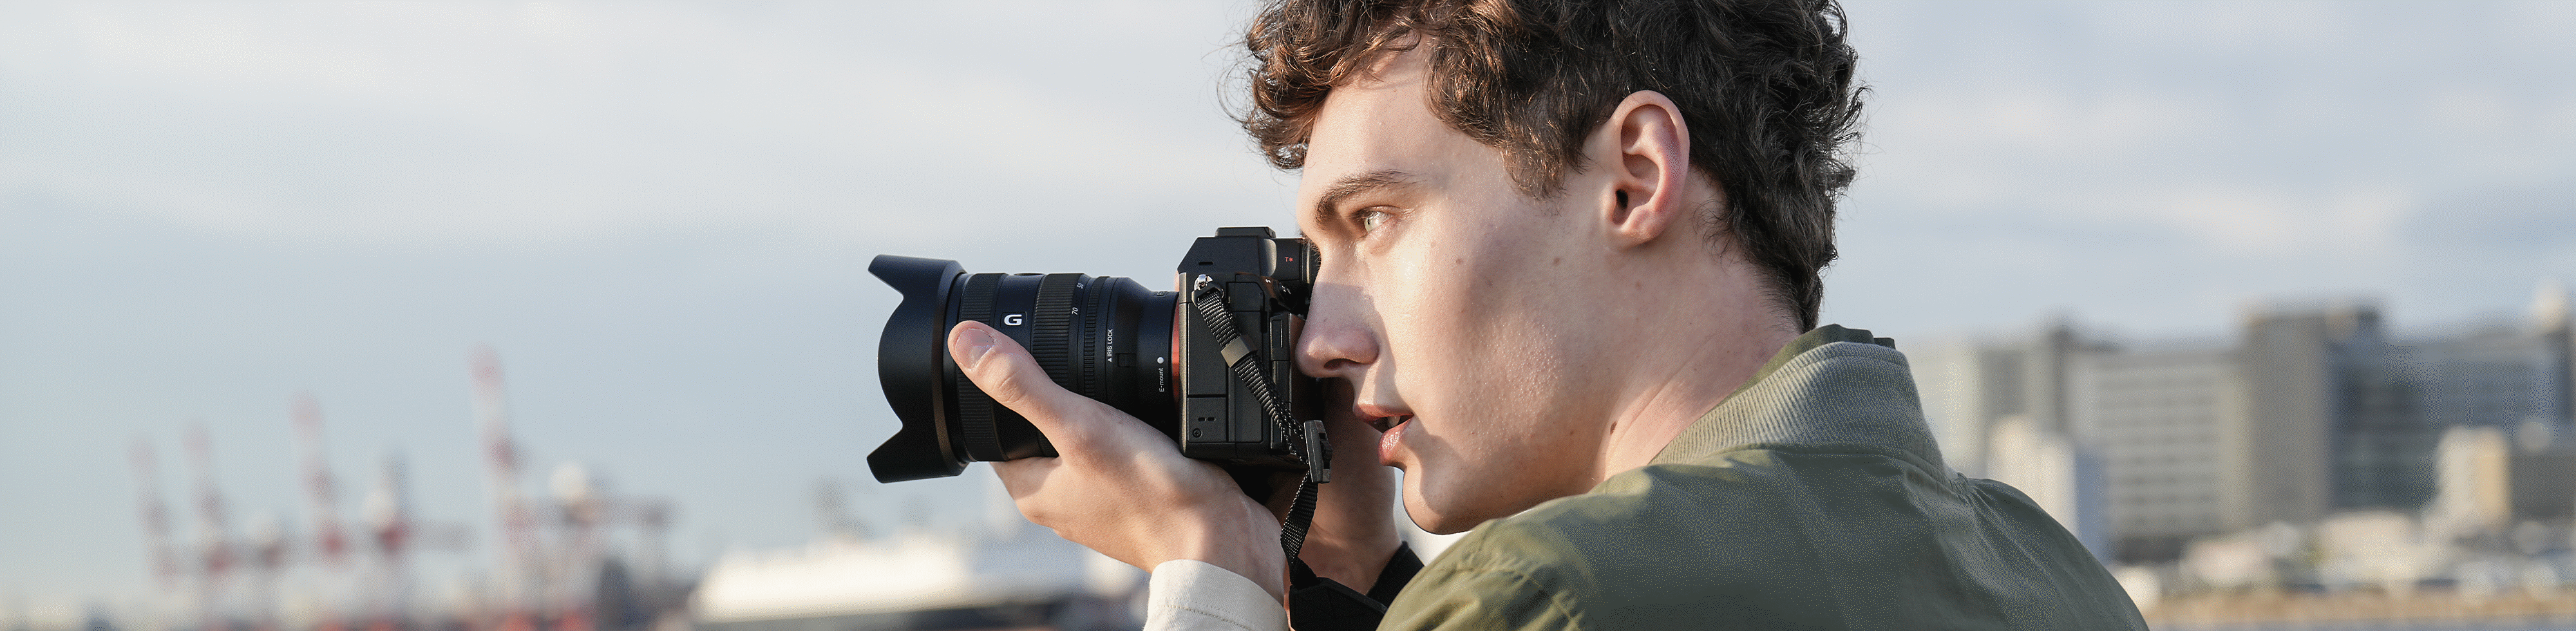 איש מצלם במיקום על חוף הים עם מצלמה בידו, באמצעות עינית